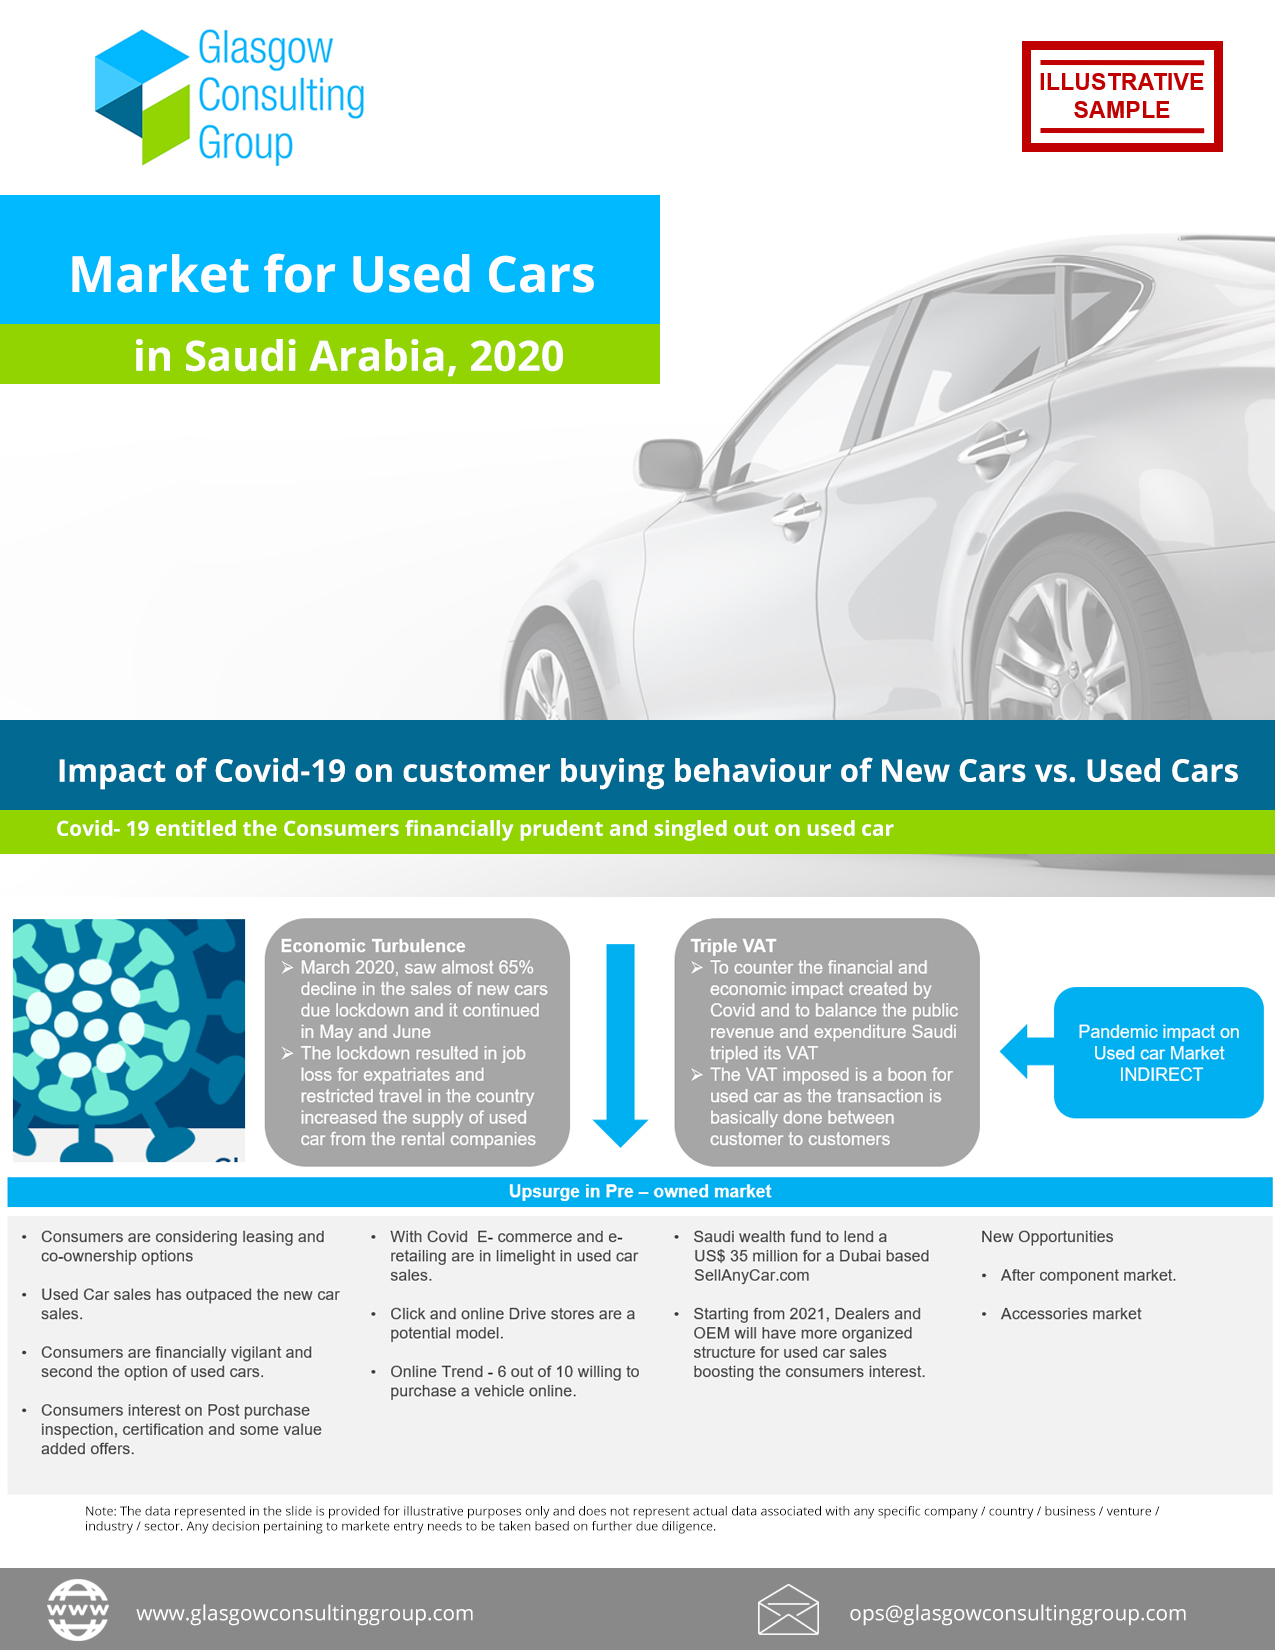 Market for Used Cars in Saudi Arabia, 2020